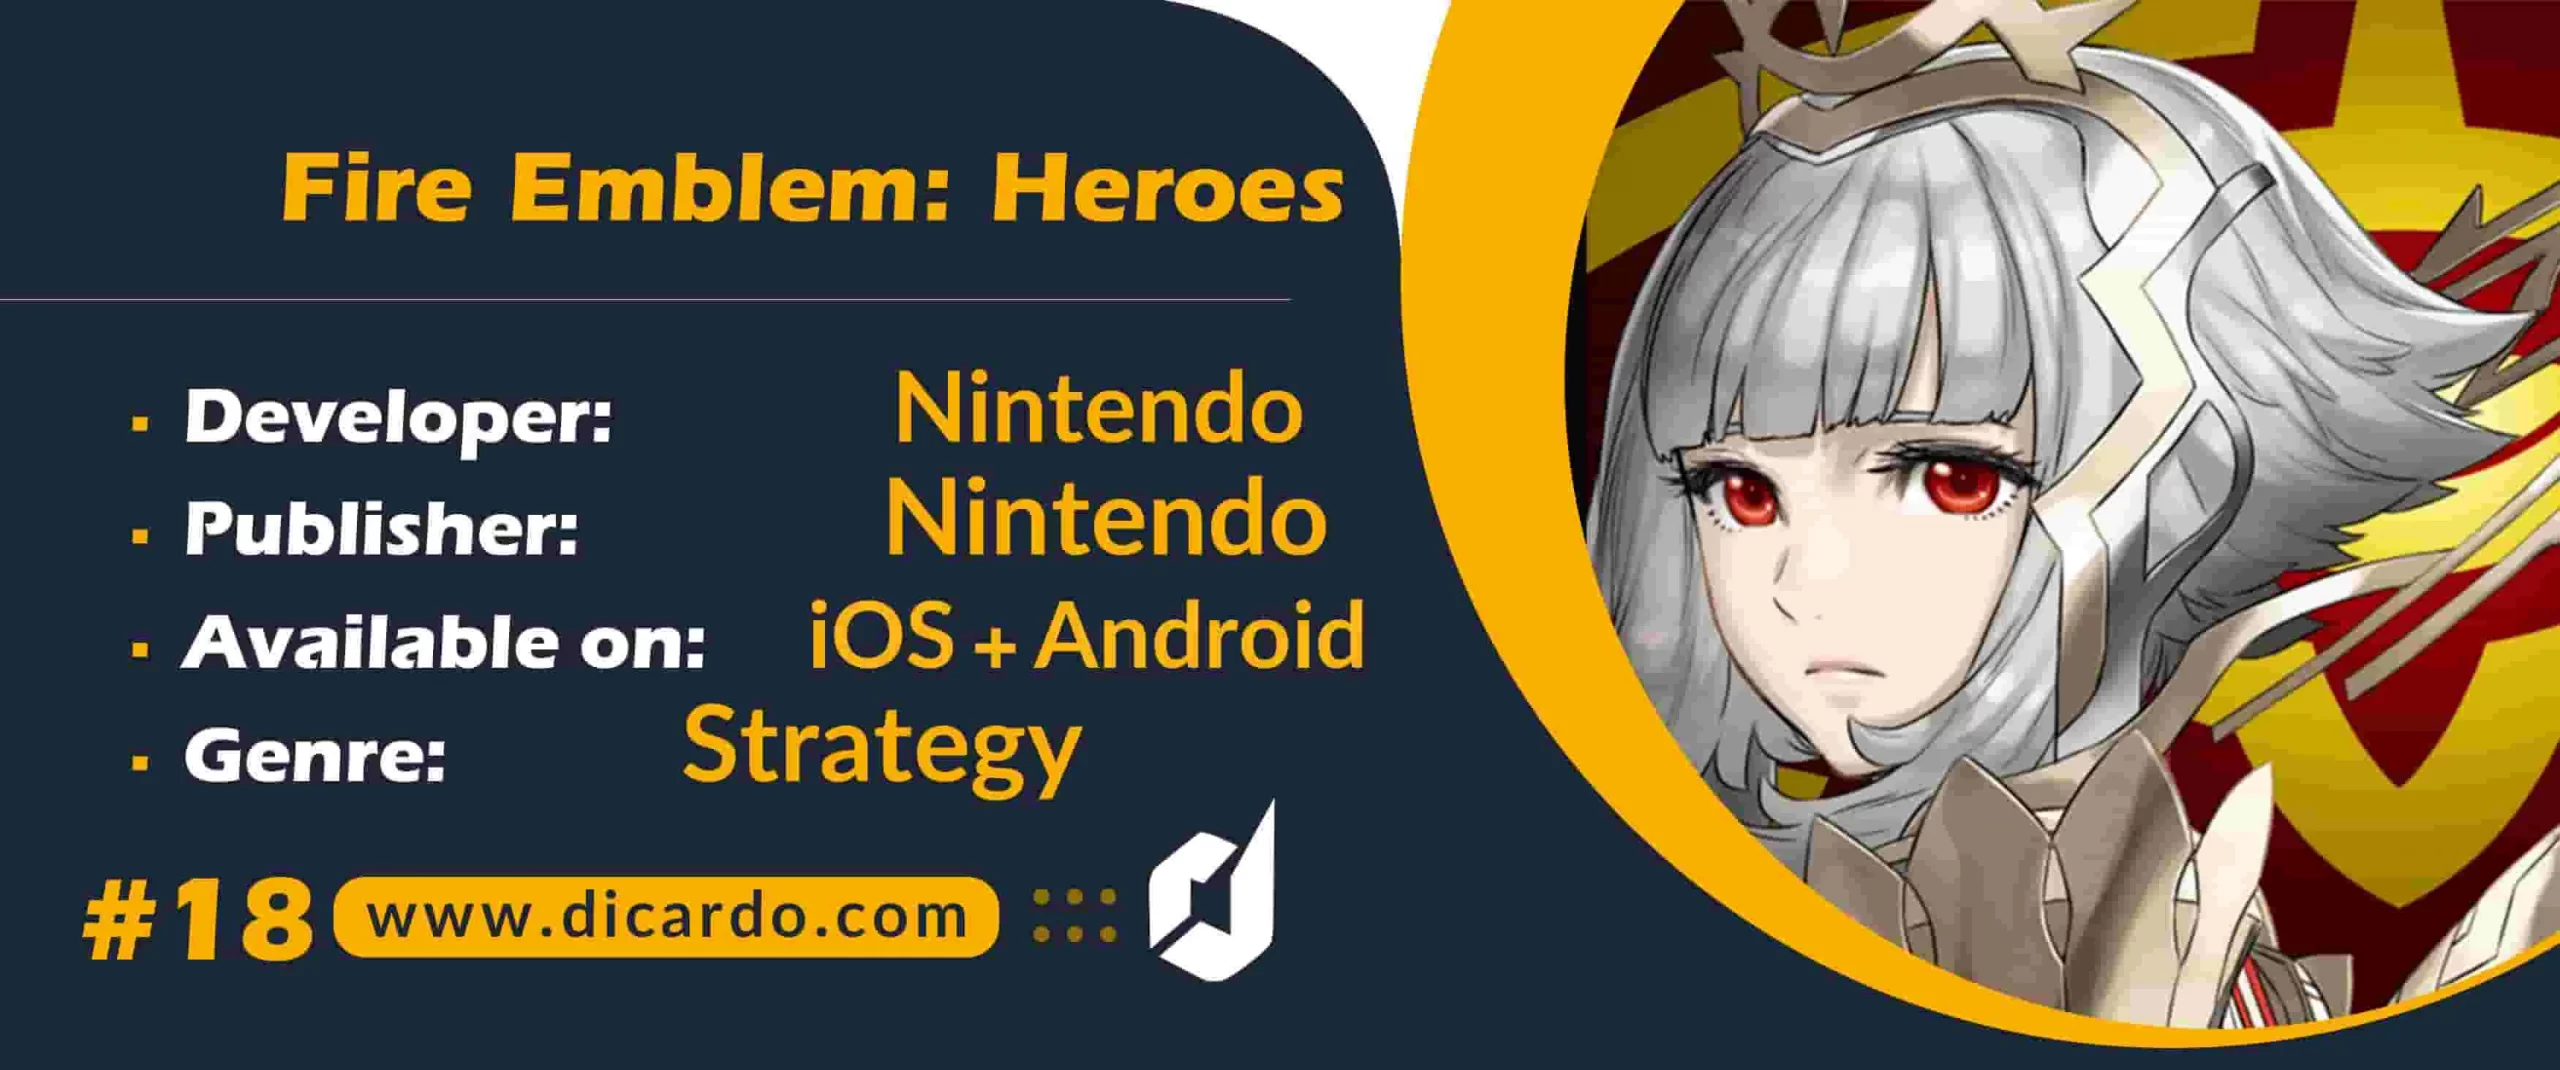 #18 فایر امبلم هیروز Fire Emblem: Heroes از بهترین بازیهای ژاپنی نینتندو